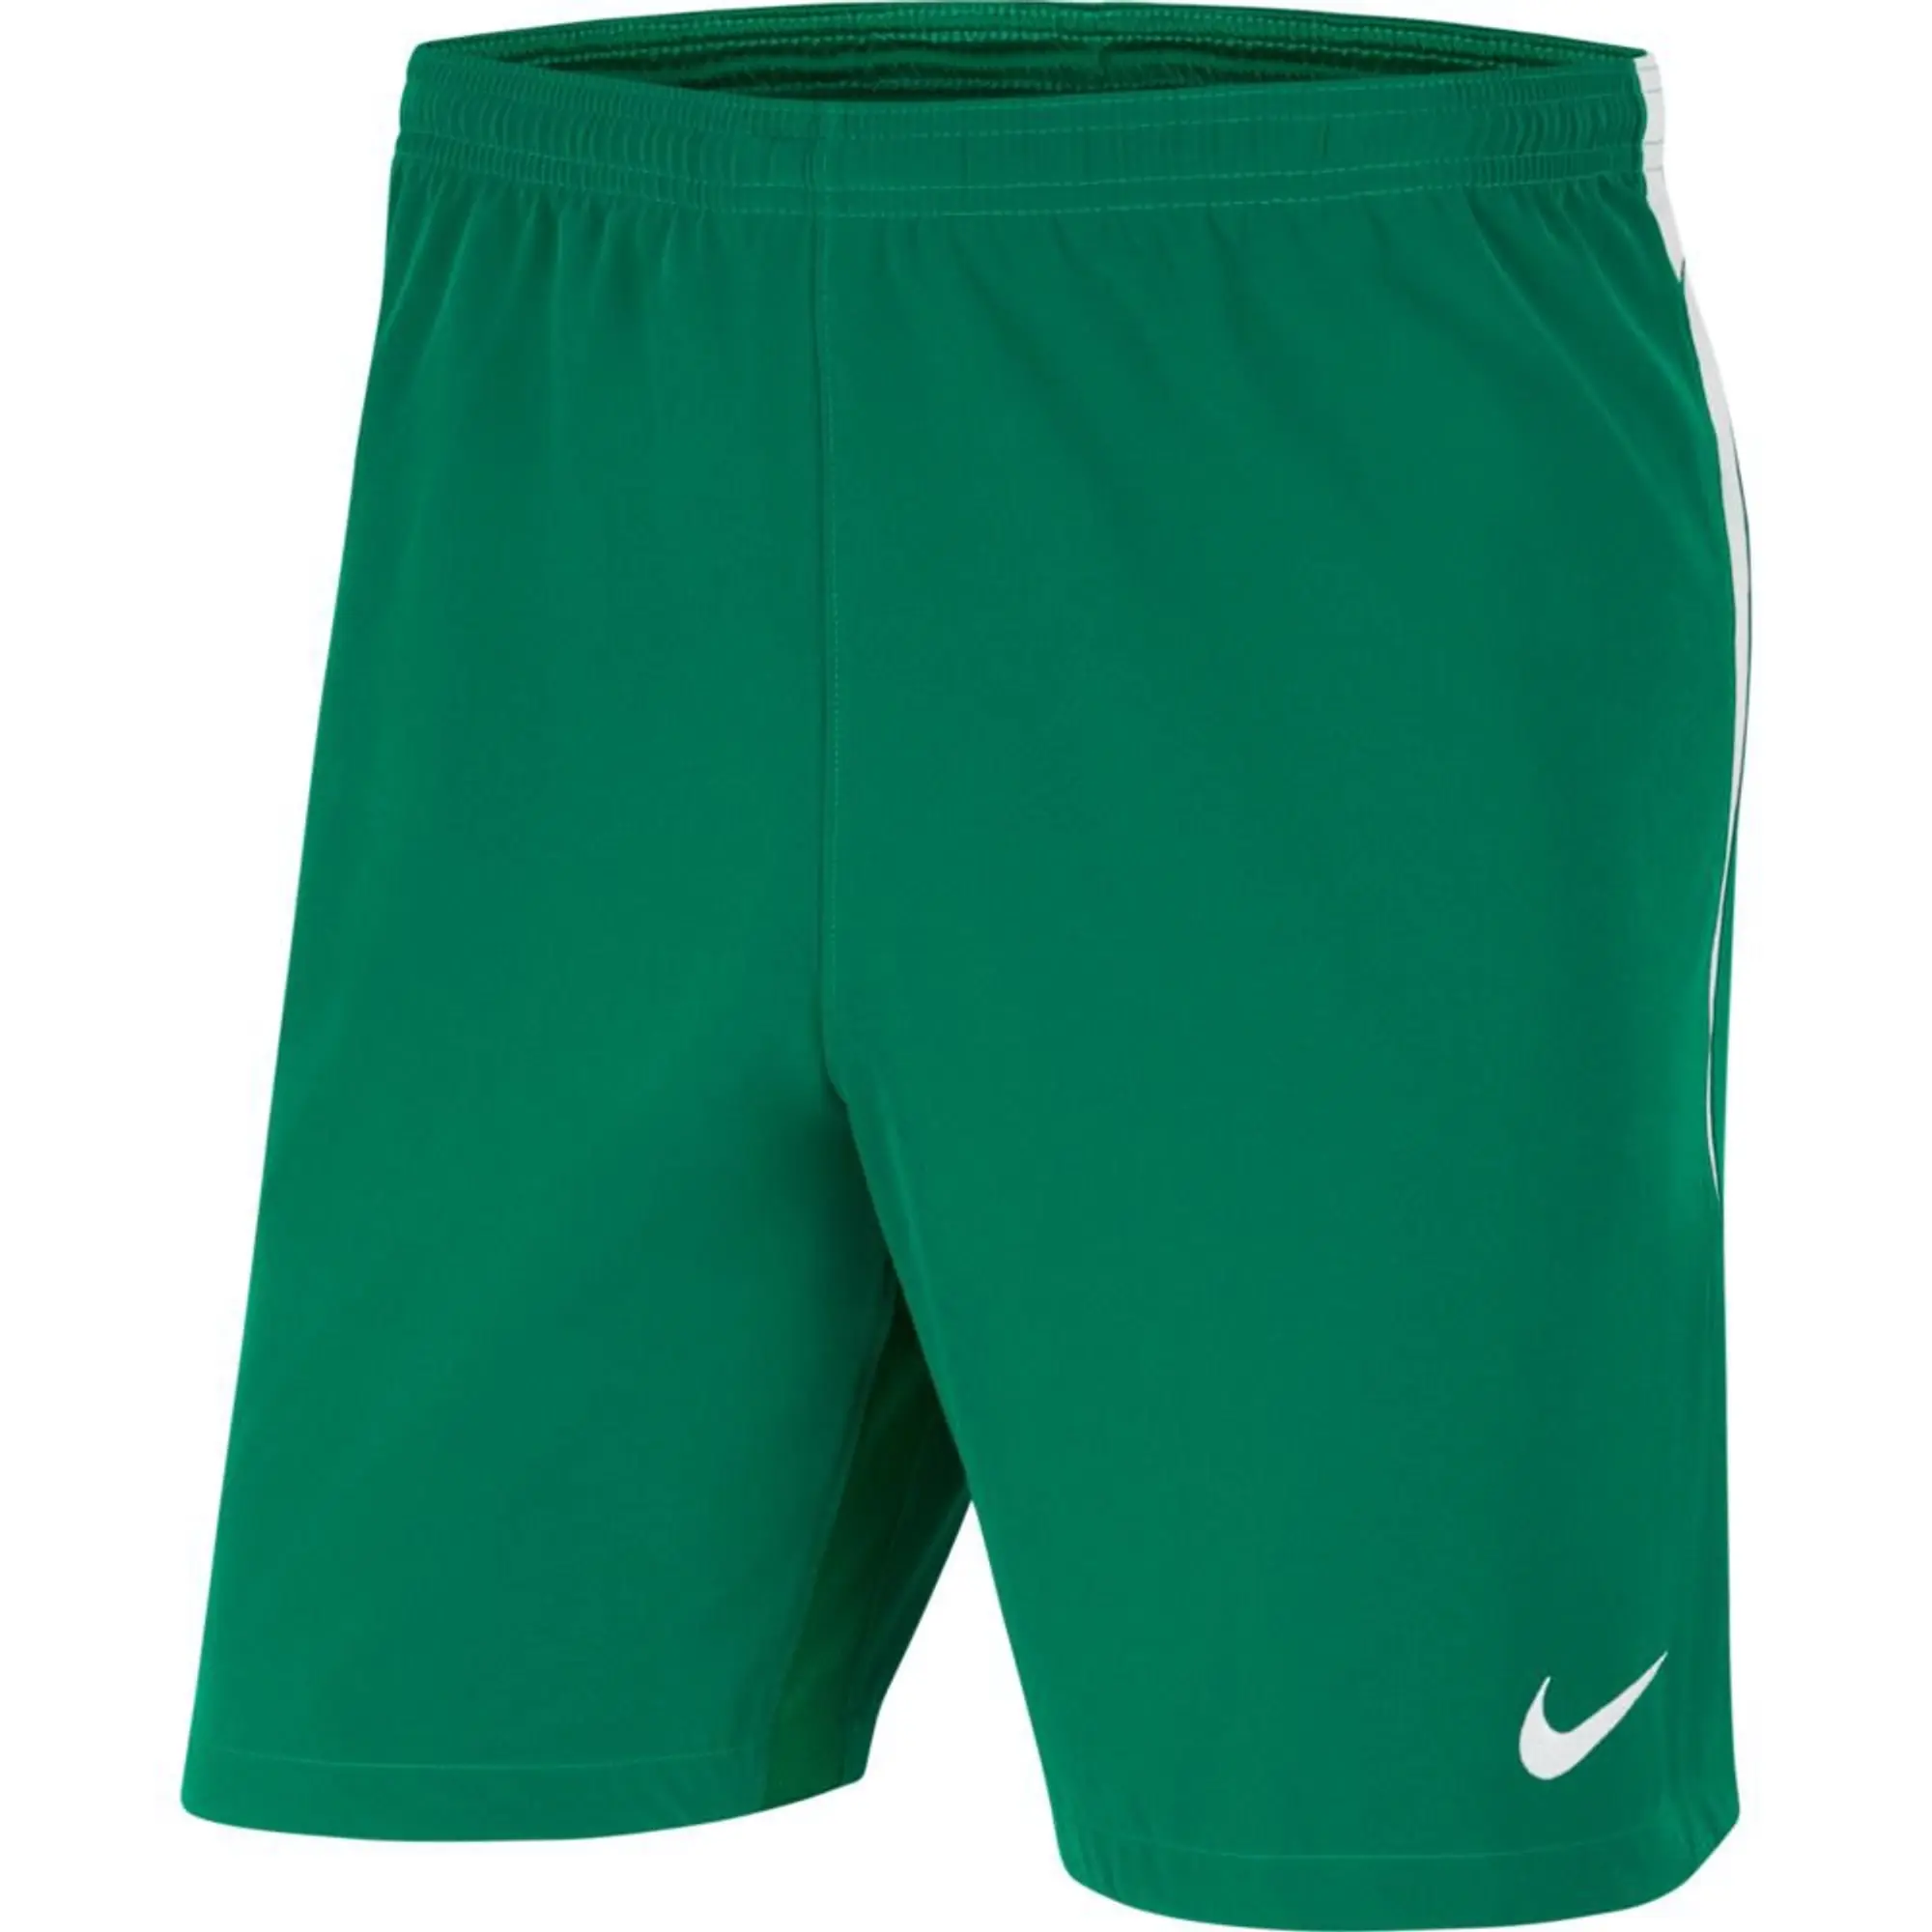 Nike Football Shorts Dri-Fit Venom Iii Woven - Green